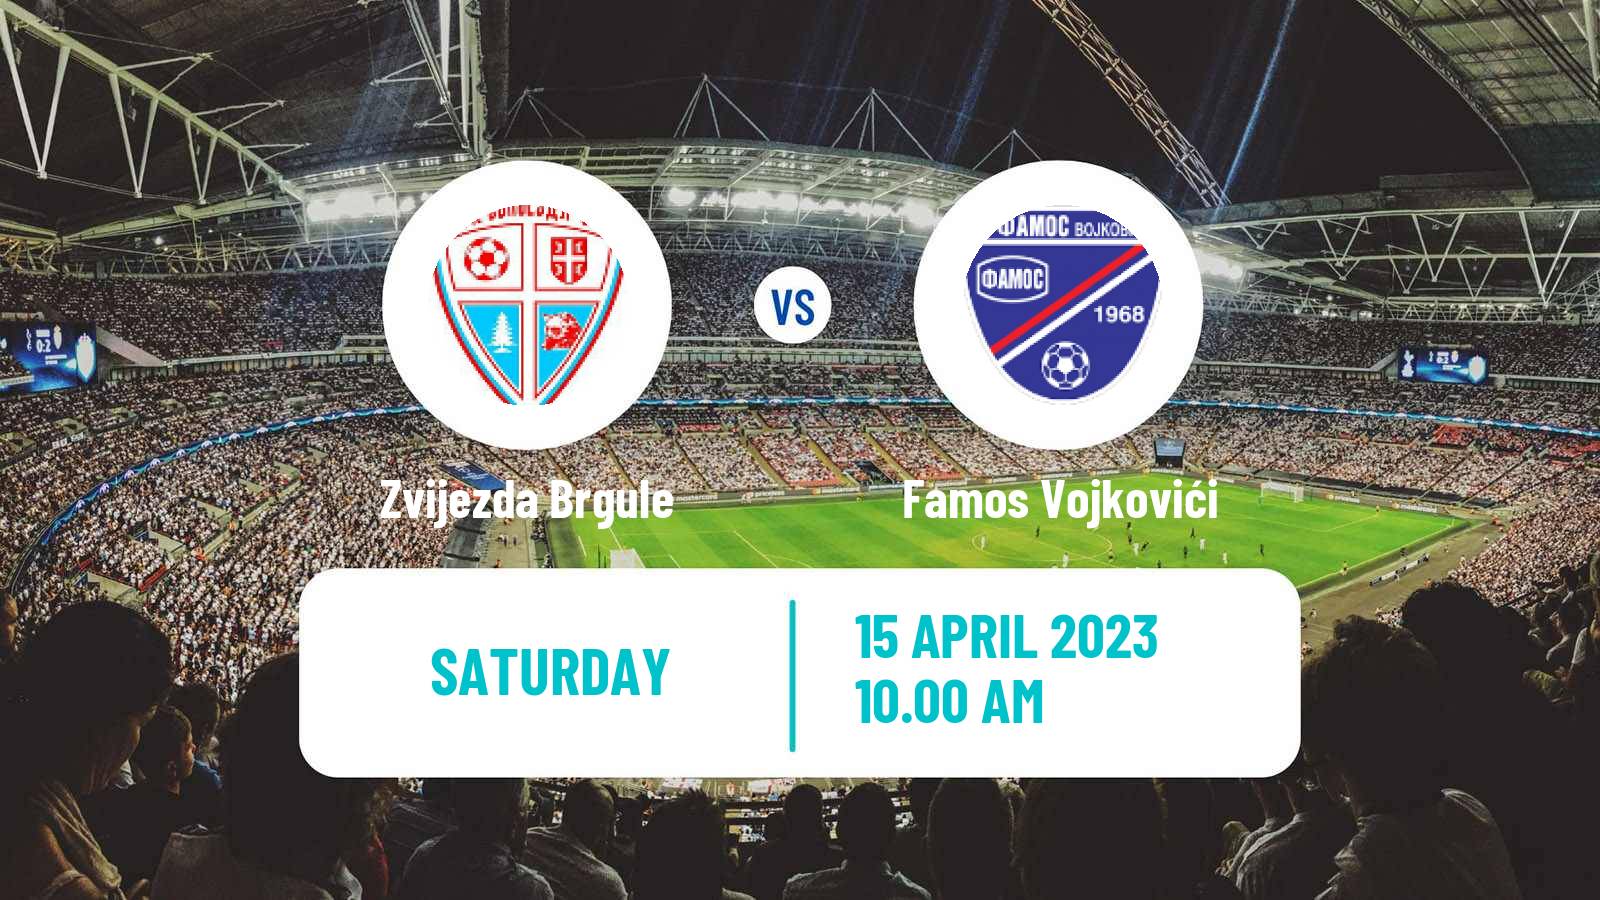 Soccer Bosnian Prva Liga RS Zvijezda Brgule - Famos Vojkovići